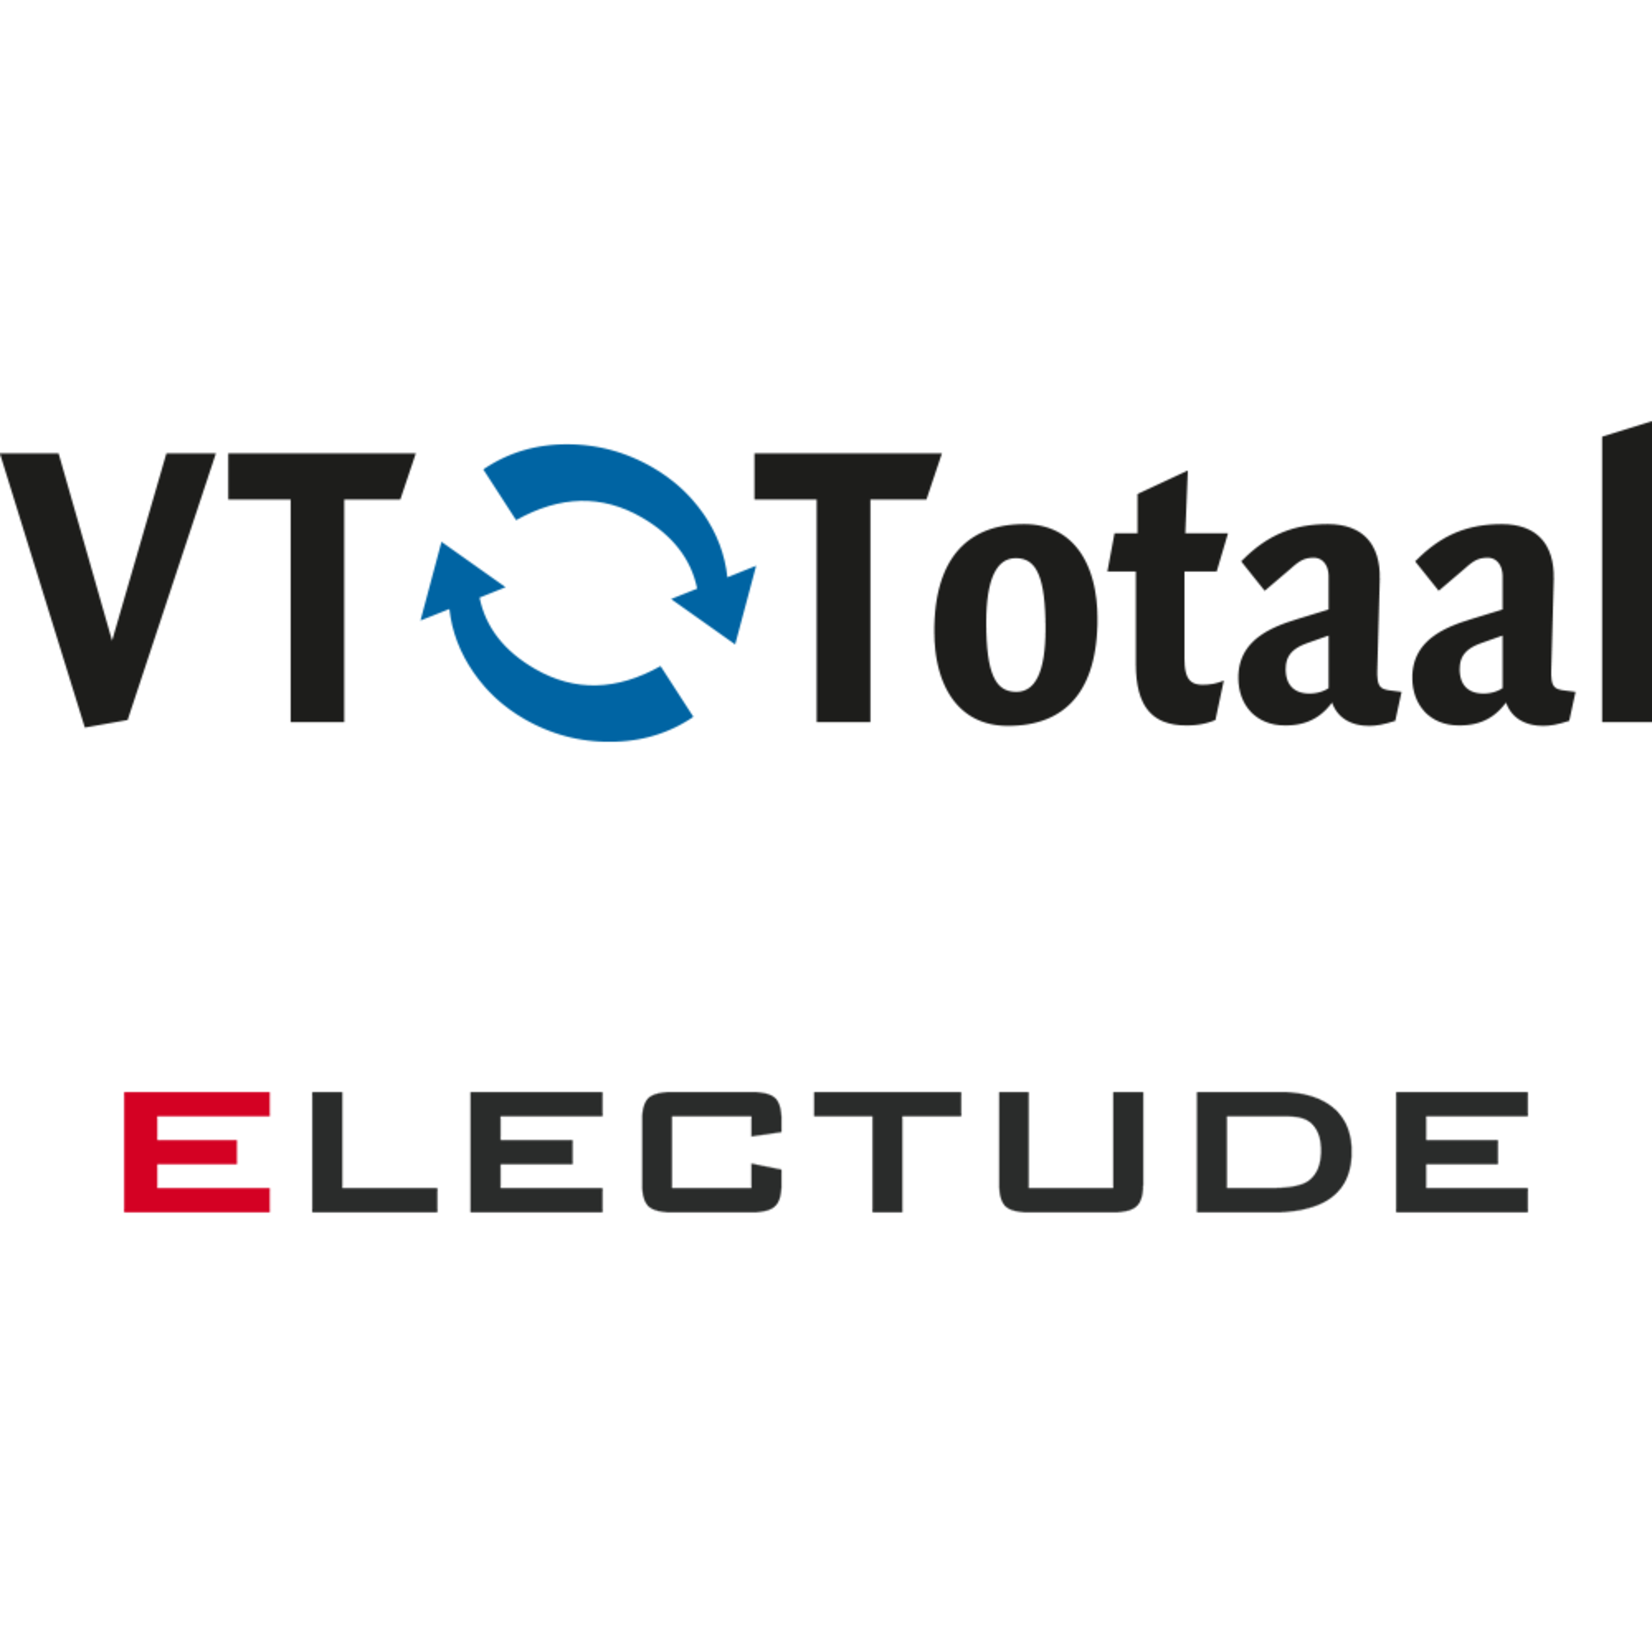 Licentie Electude - combivoucher: vmbo Automotive + MK Autotechniek, VT-Totaal 24 maanden